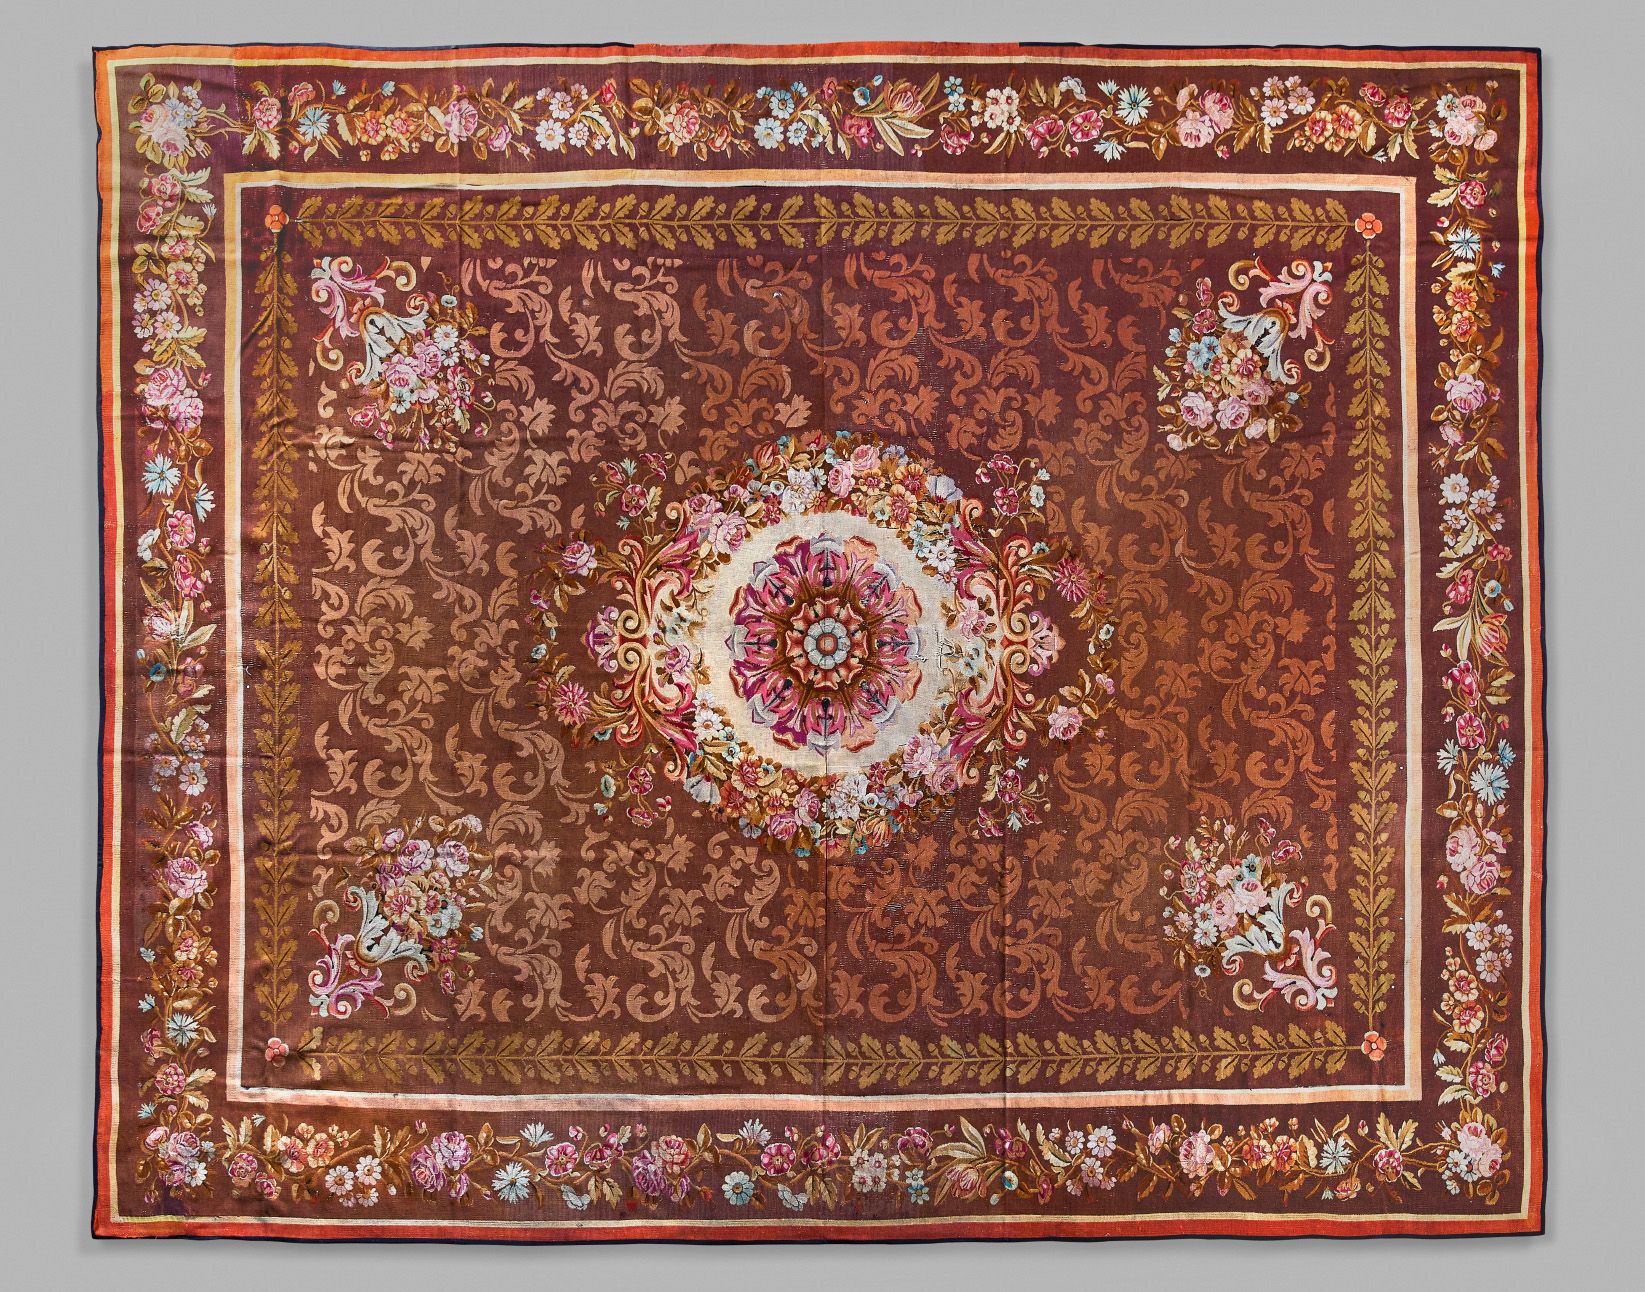 Aubusson 奥布松：棕色地毯，有叶子的装饰，中央有玫瑰花，边框有多色花。长474 - 宽386厘米
边界有小的事故和修补。